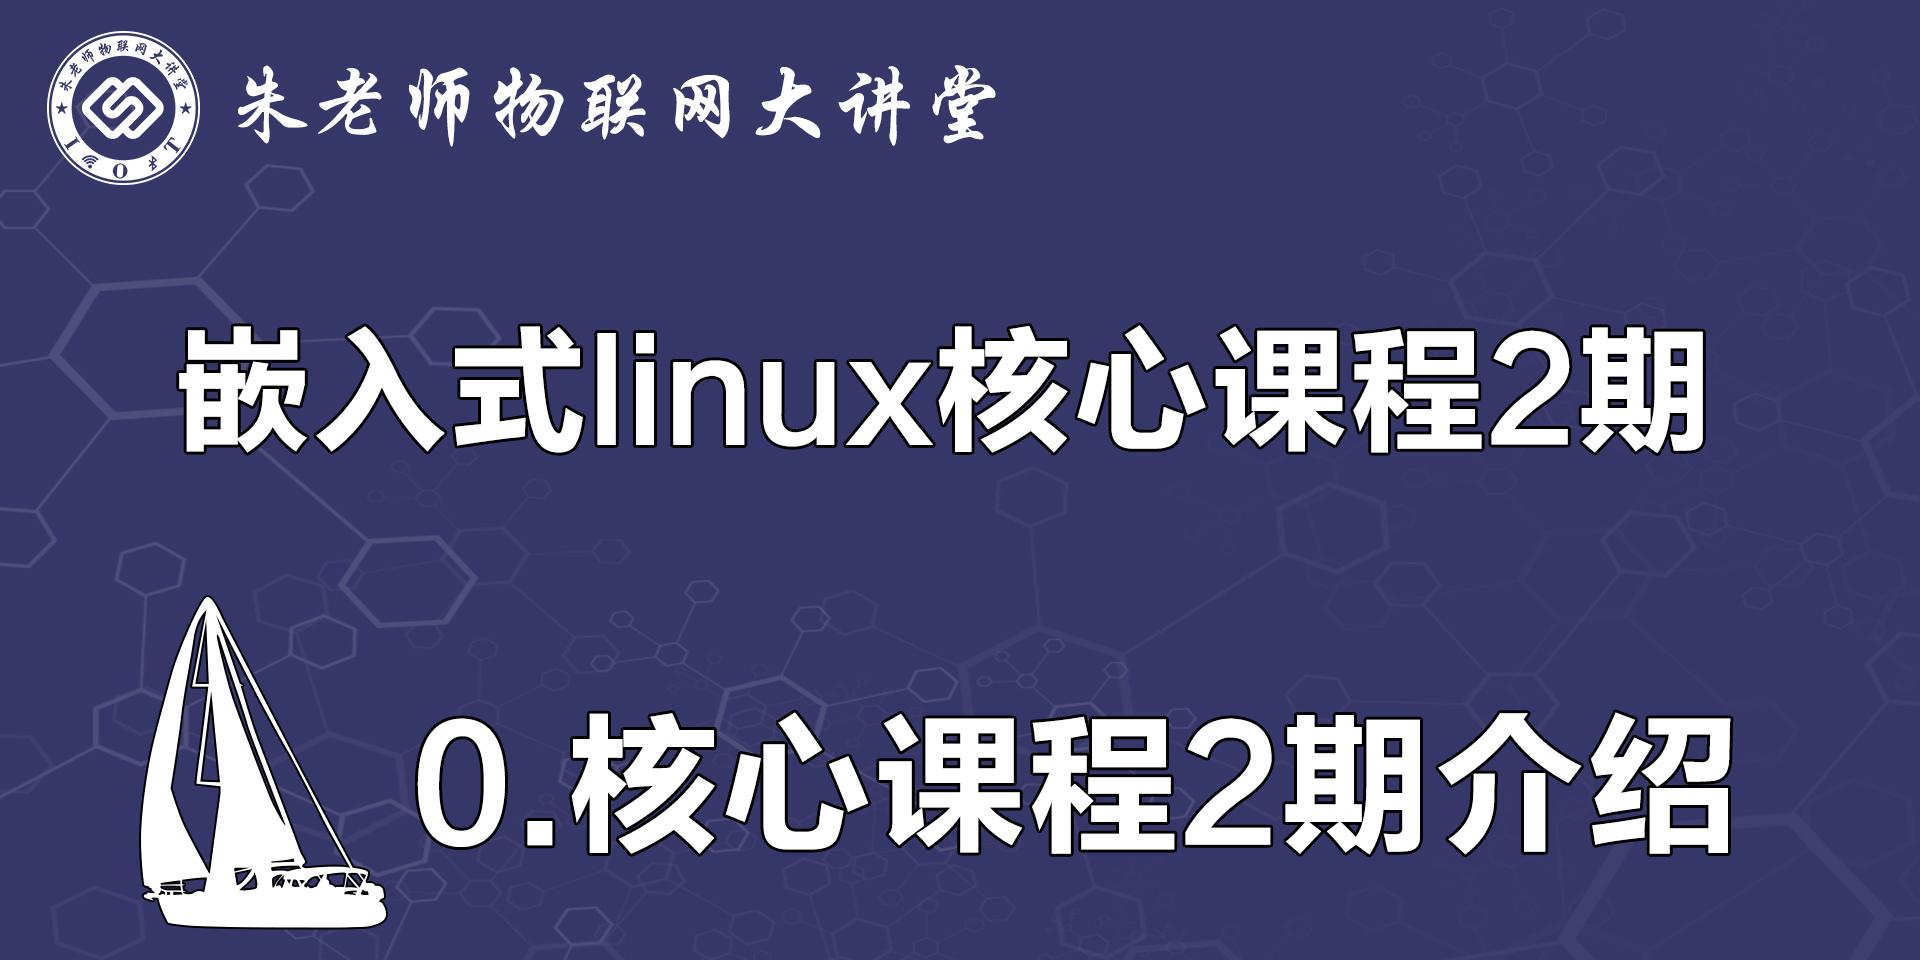 朱有鹏老师嵌入式linux核心课程2期介绍